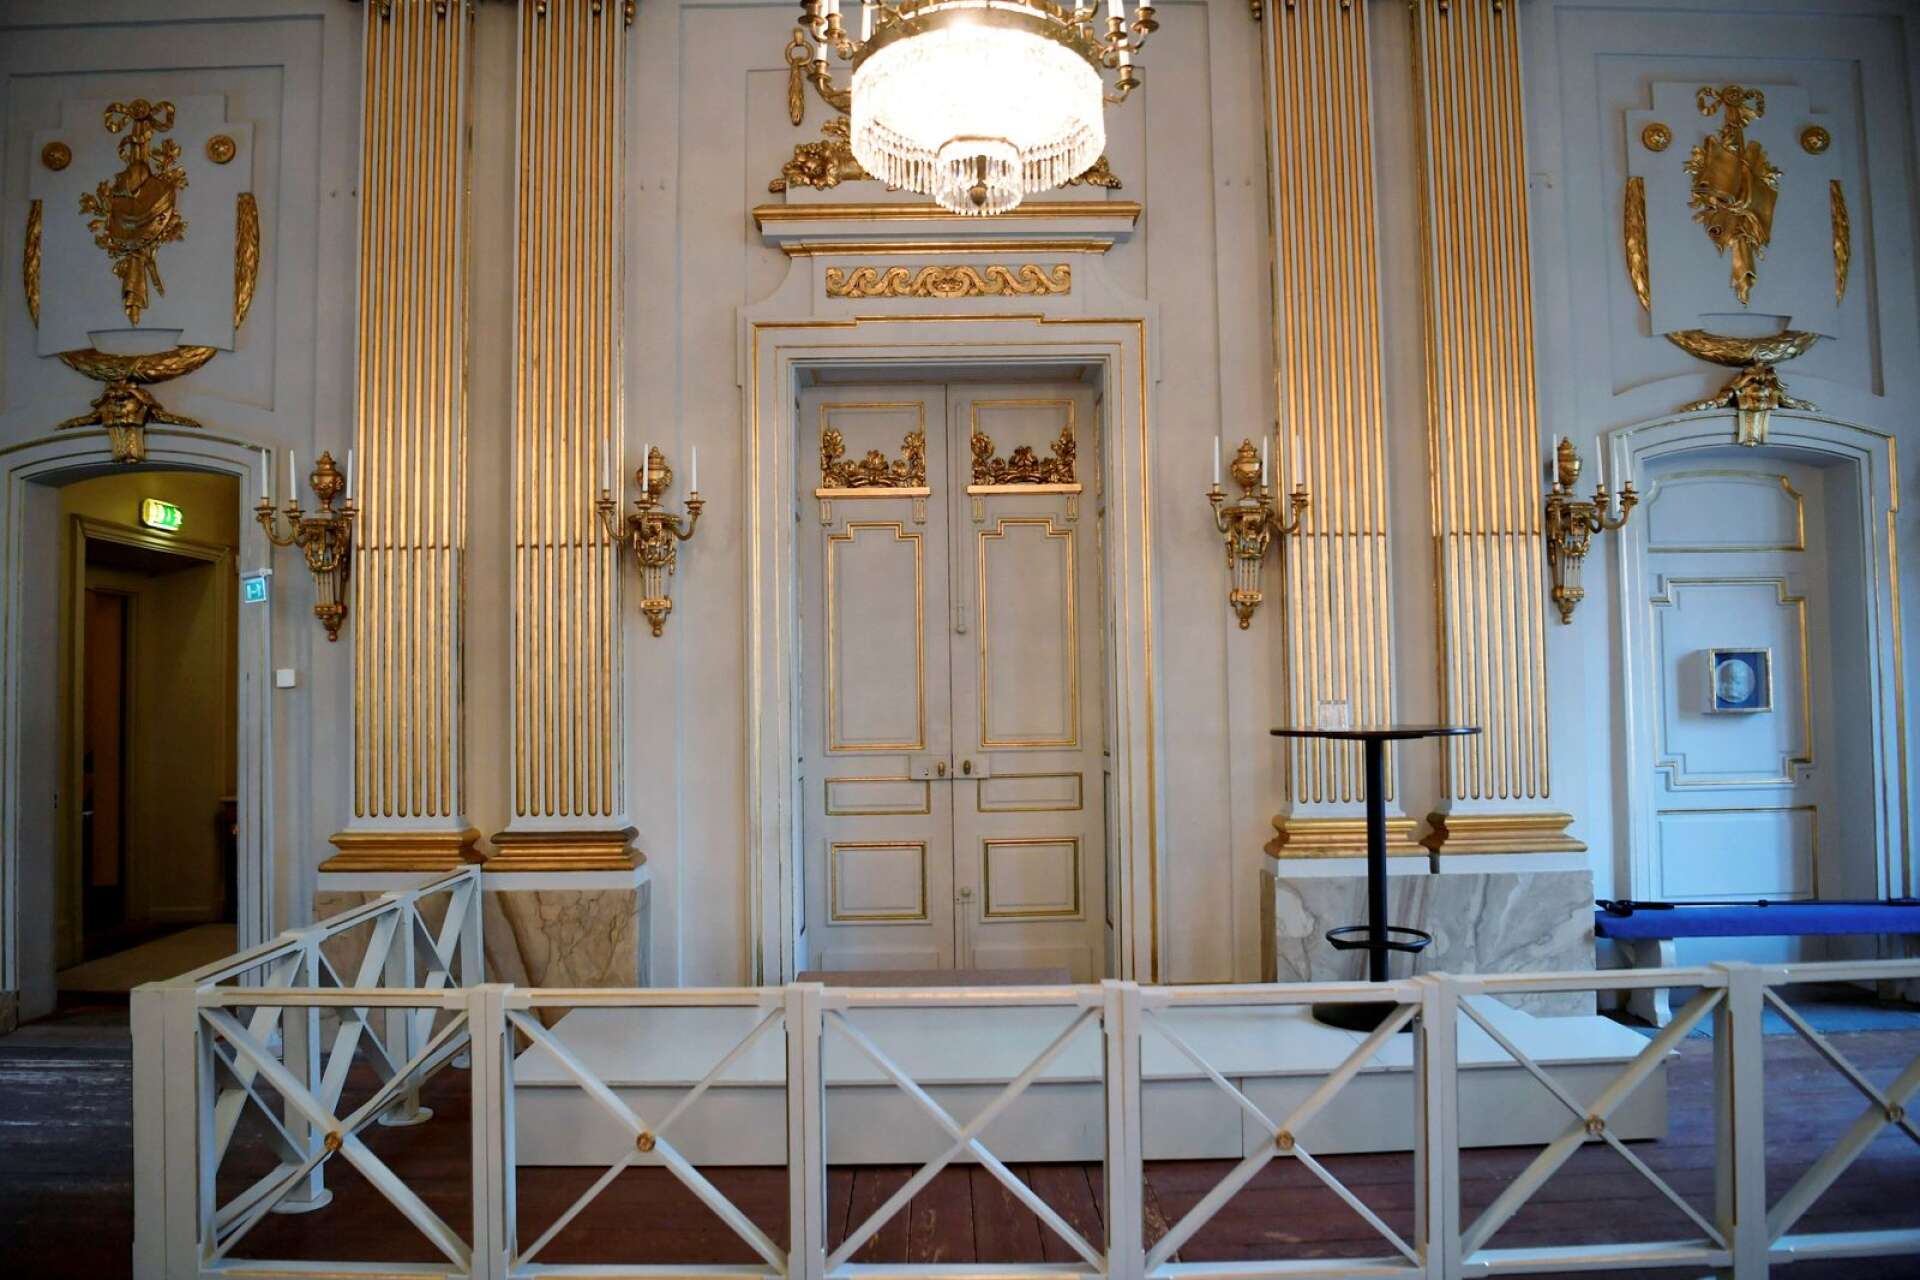 Välkänd dörr. På torsdag klockan 13 öppnas den guldkantade dörren i Börshuset i Stockholm och årets Nobelpris i litteratur tillkännages.